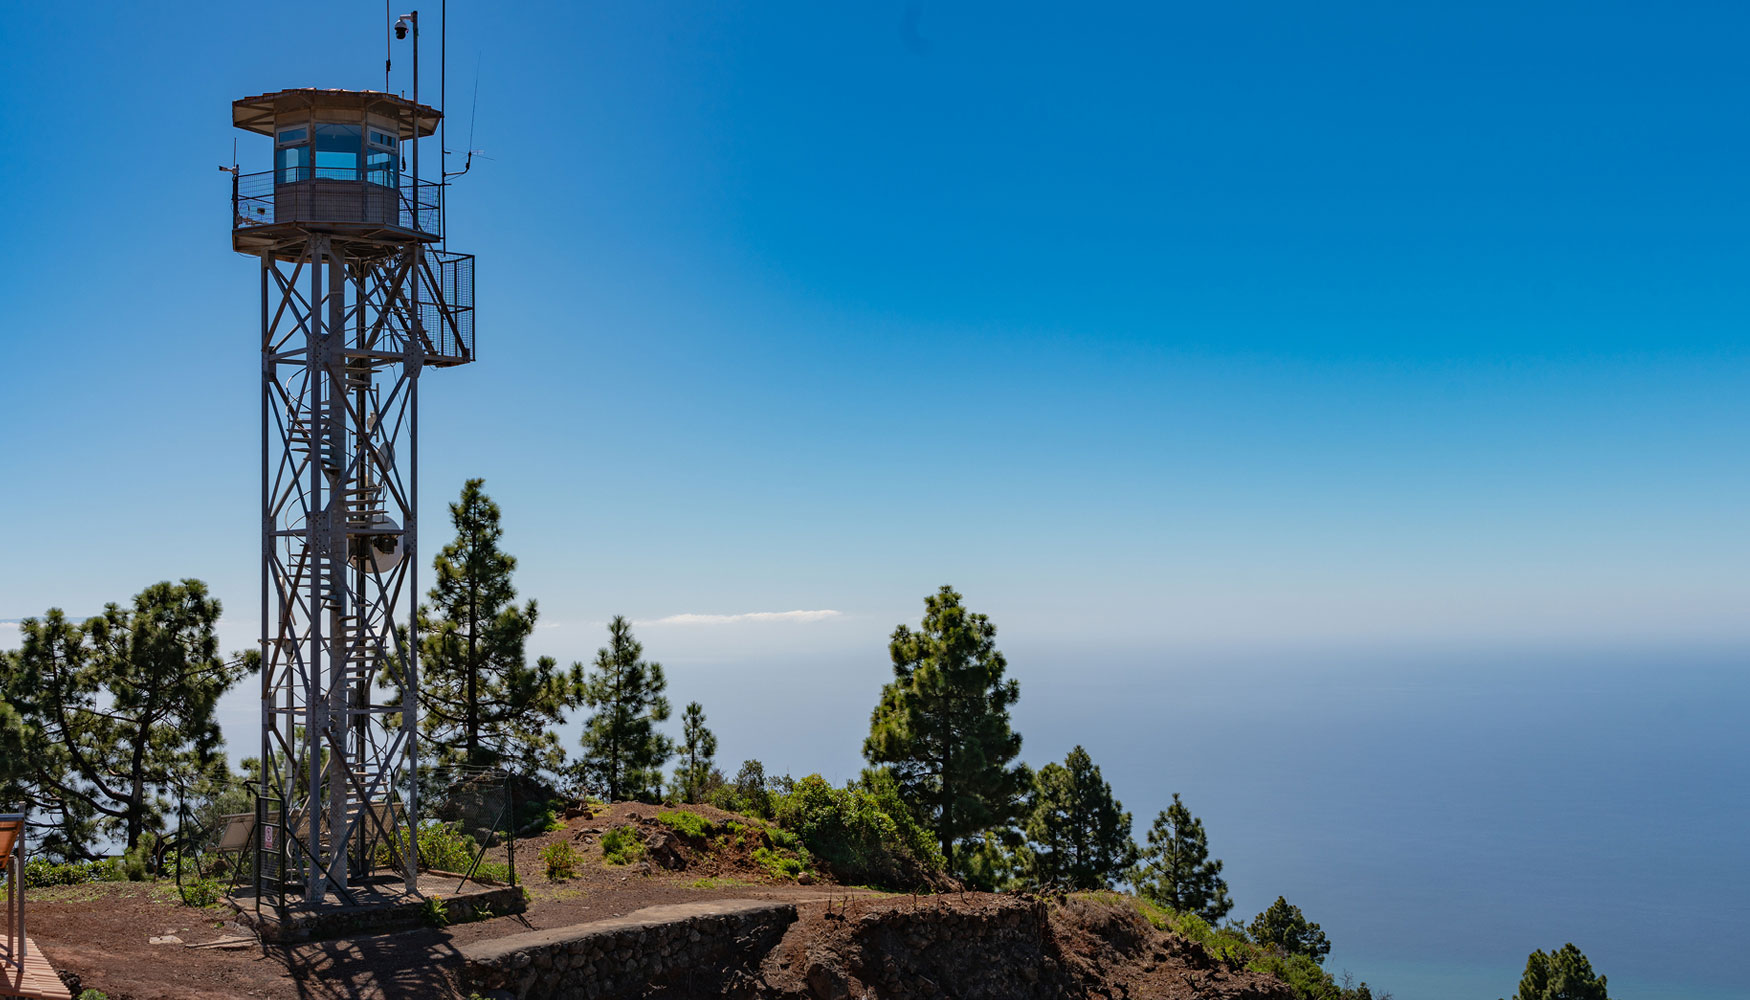 La orografa de la isla de La Palma, su vegetacin o fenmenos como el mar de nubes aaden dificultades a la medicin de la temperatura...